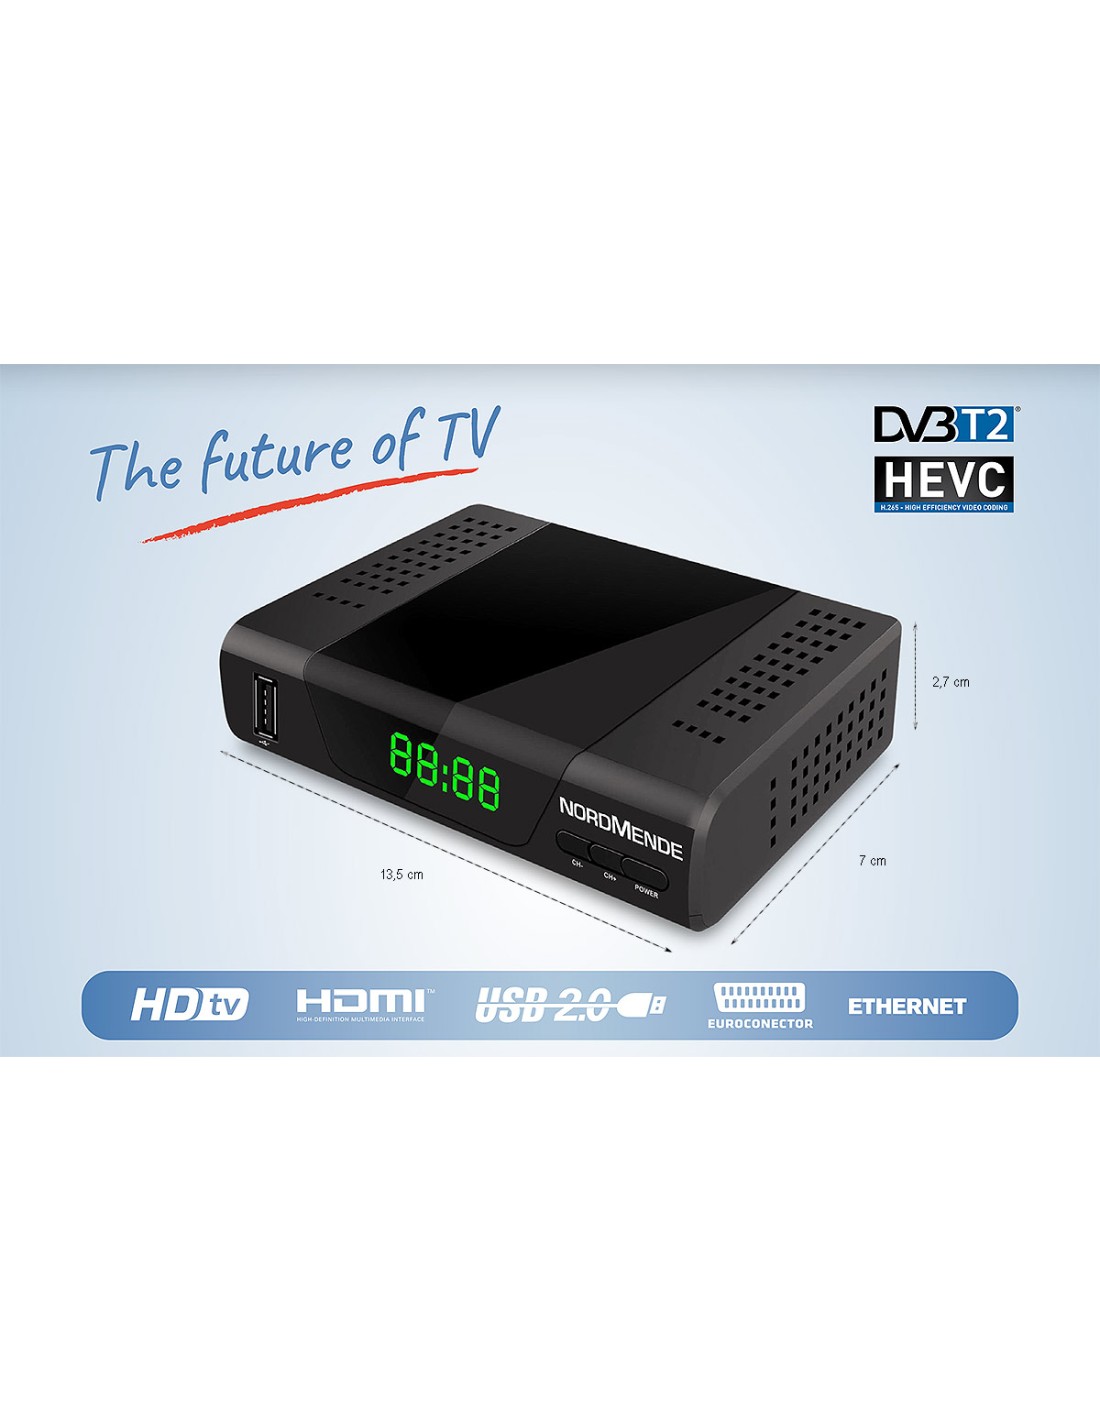 Receptor TDT Normende ZAP26510ND con Salida HDMI y euroconector